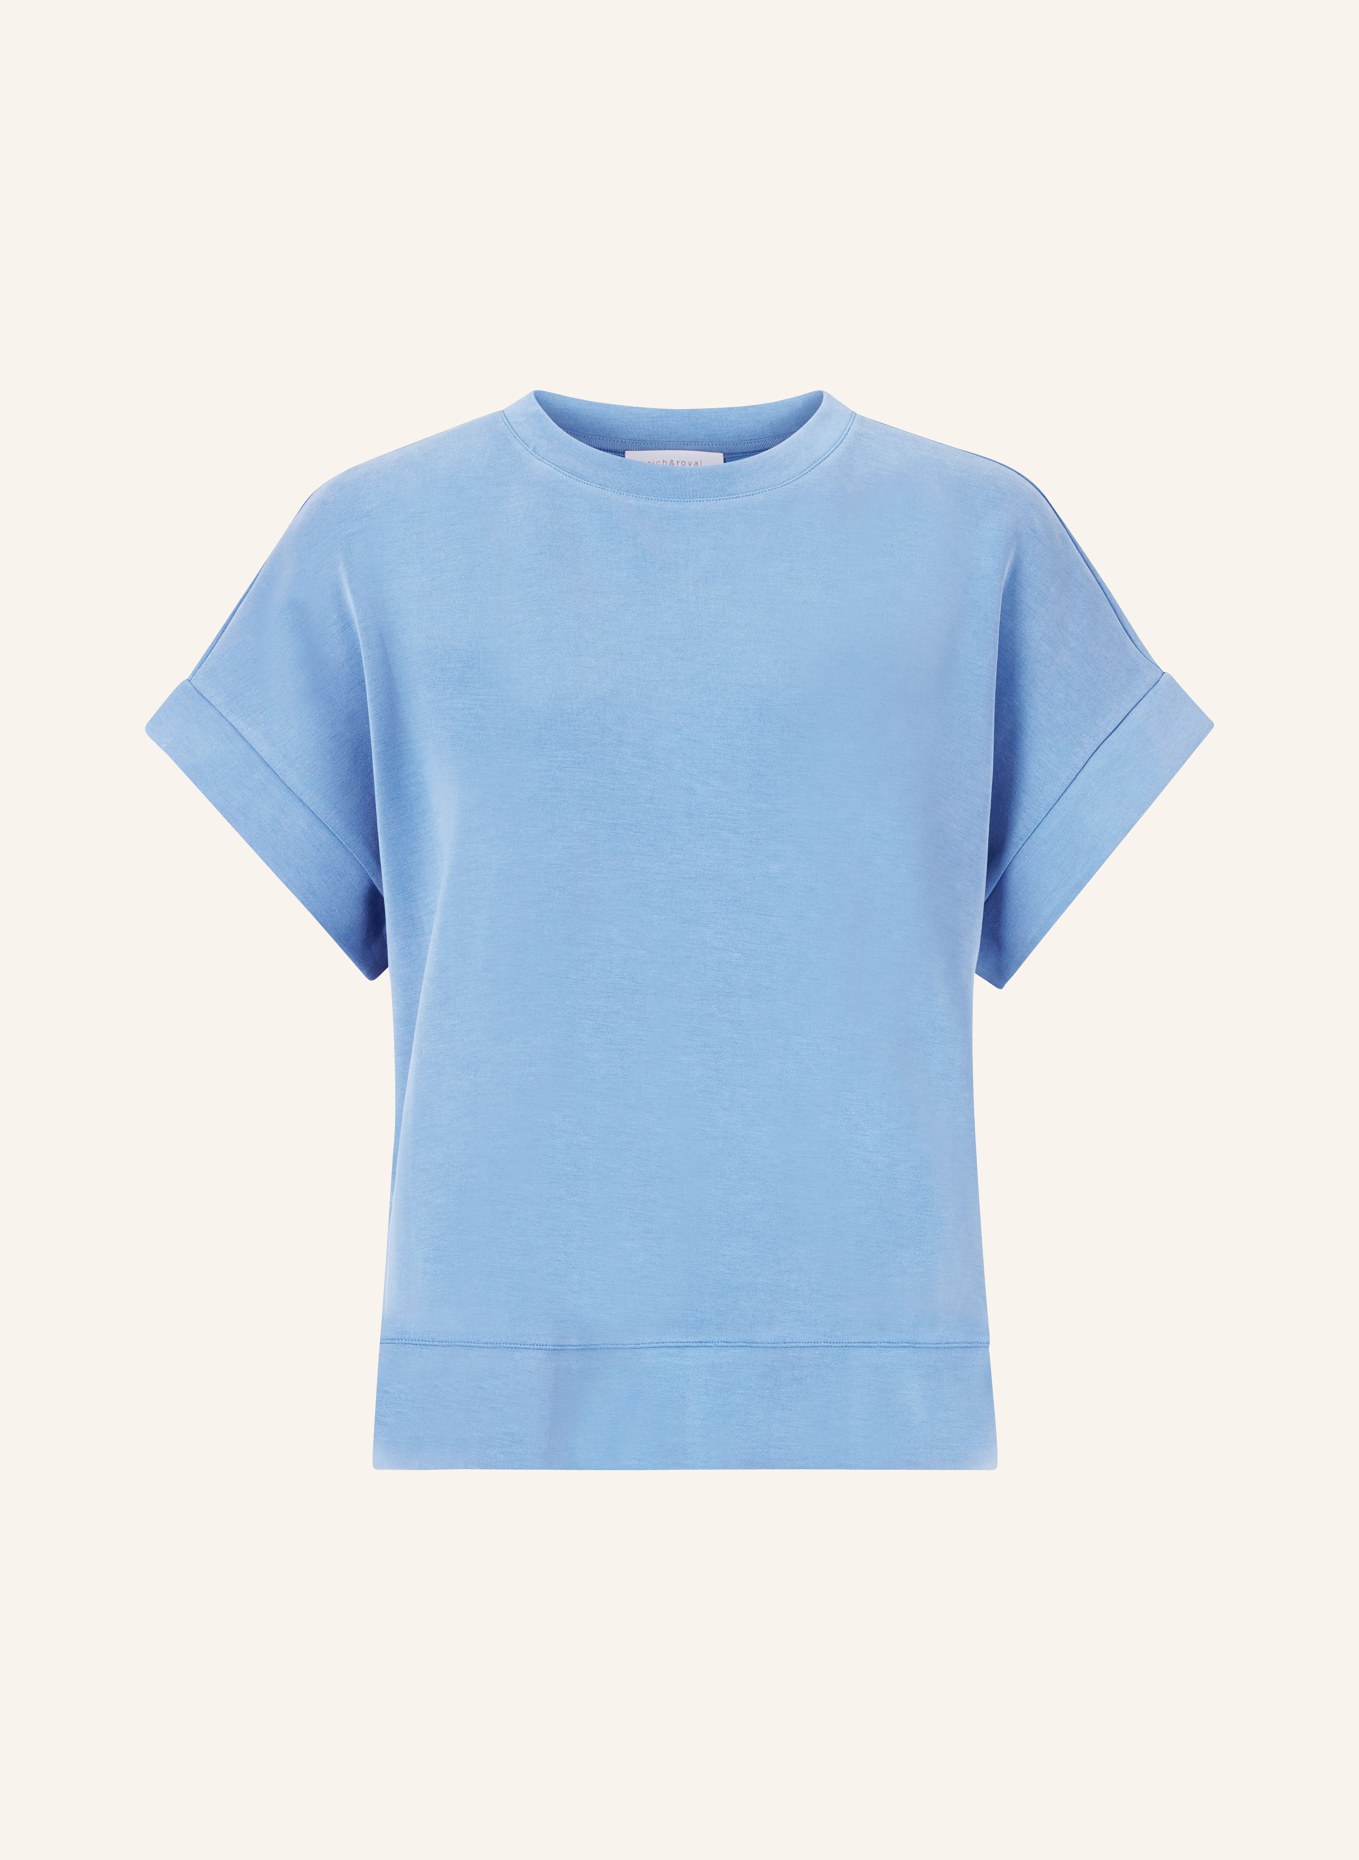 rich&royal T-shirt, Color: BLUE (Image 1)